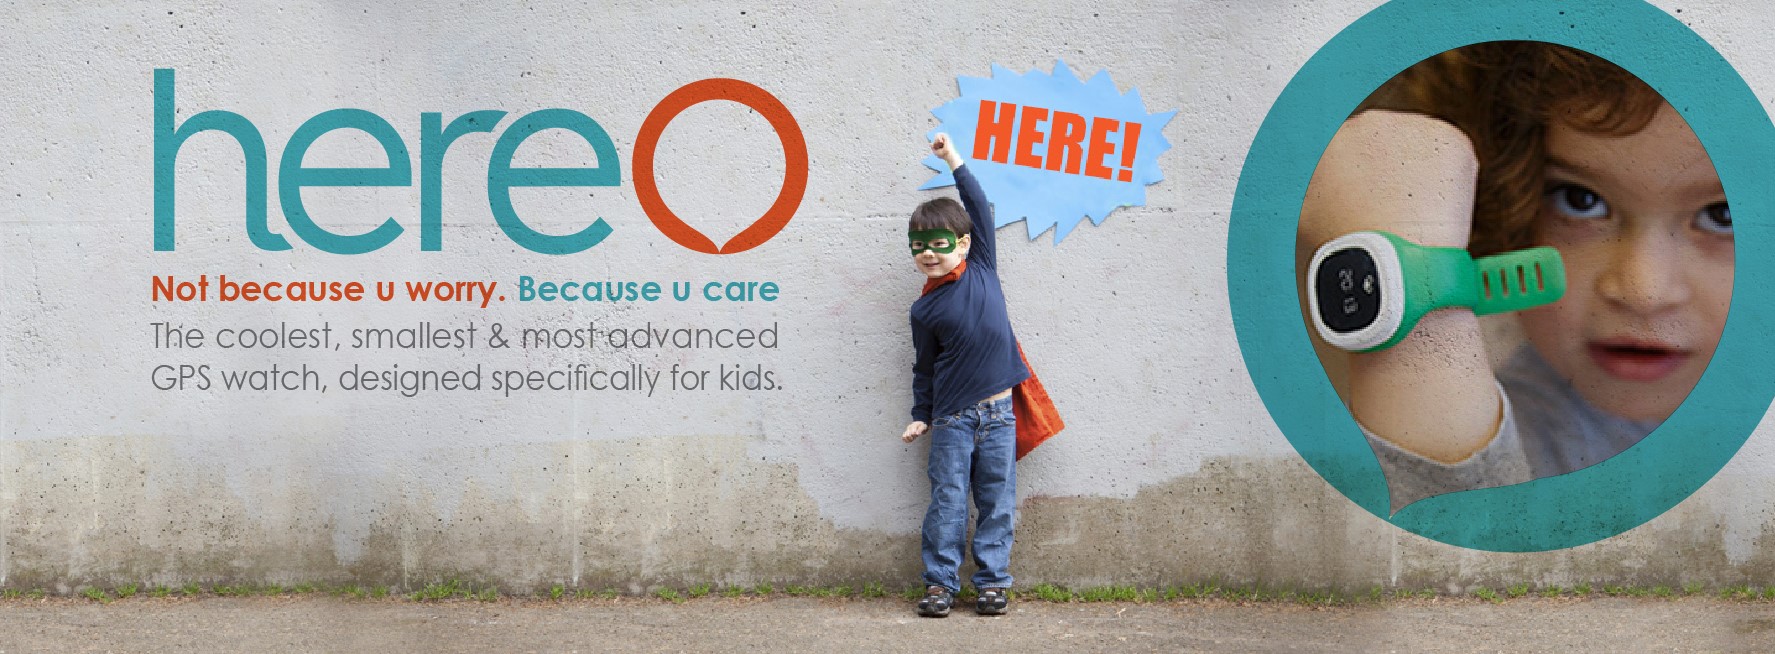 Haz felices a los padres españoles con una propuesta como Hereo, un GPS para niños